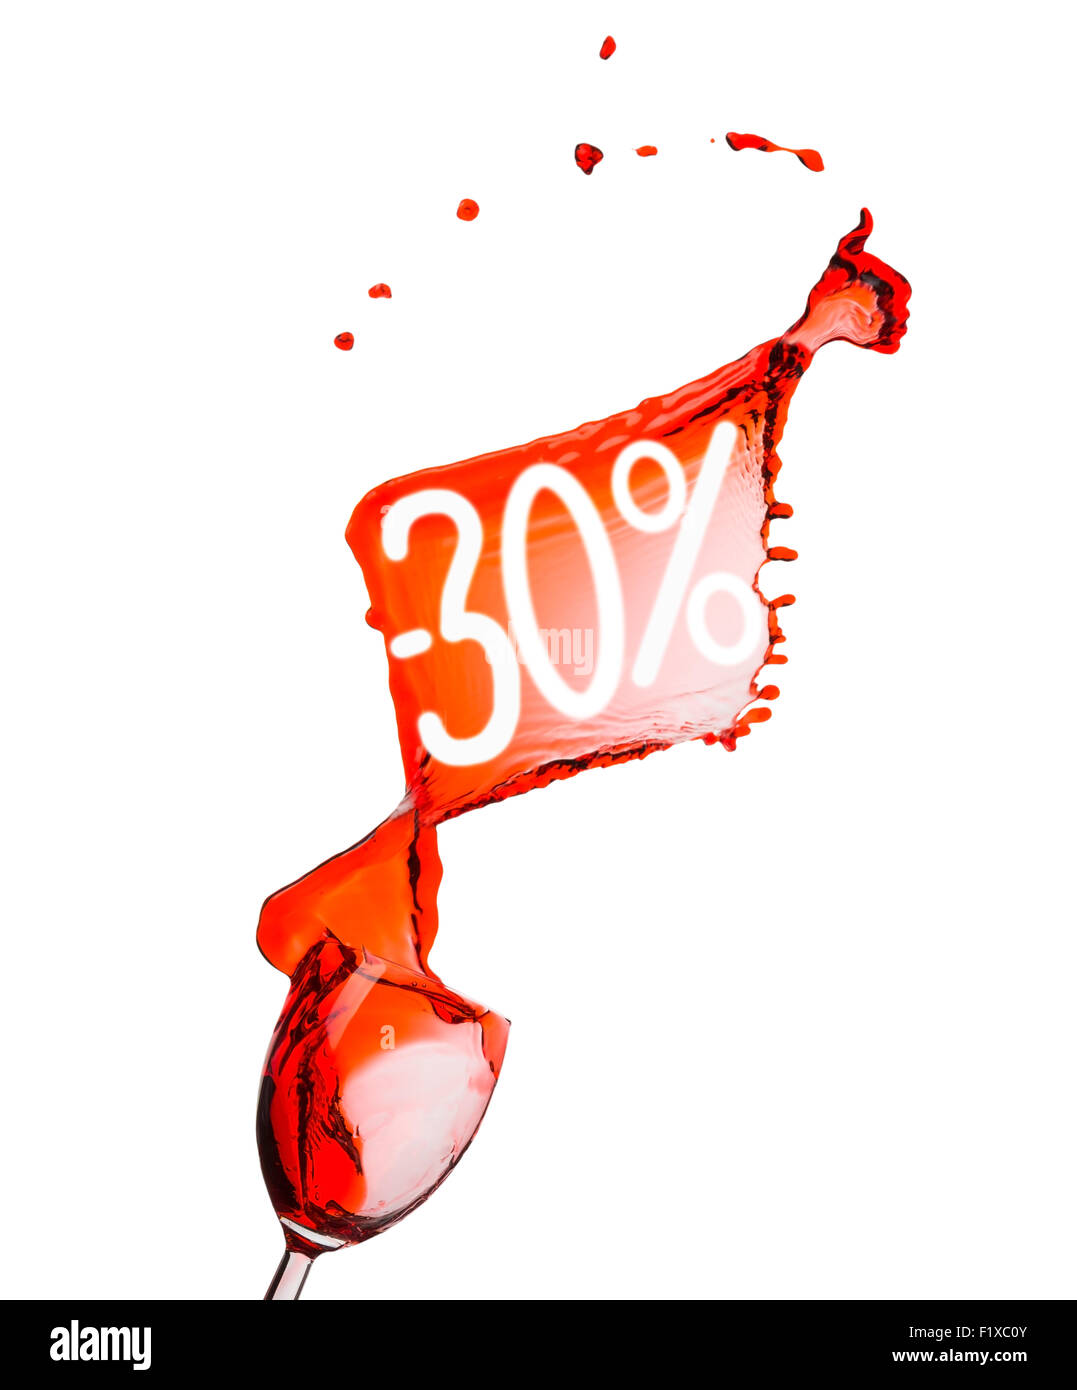 Rotwein-Splash. 30 Prozent Rabatt Sale. Isoliert auf weißem Hintergrund. Stockfoto